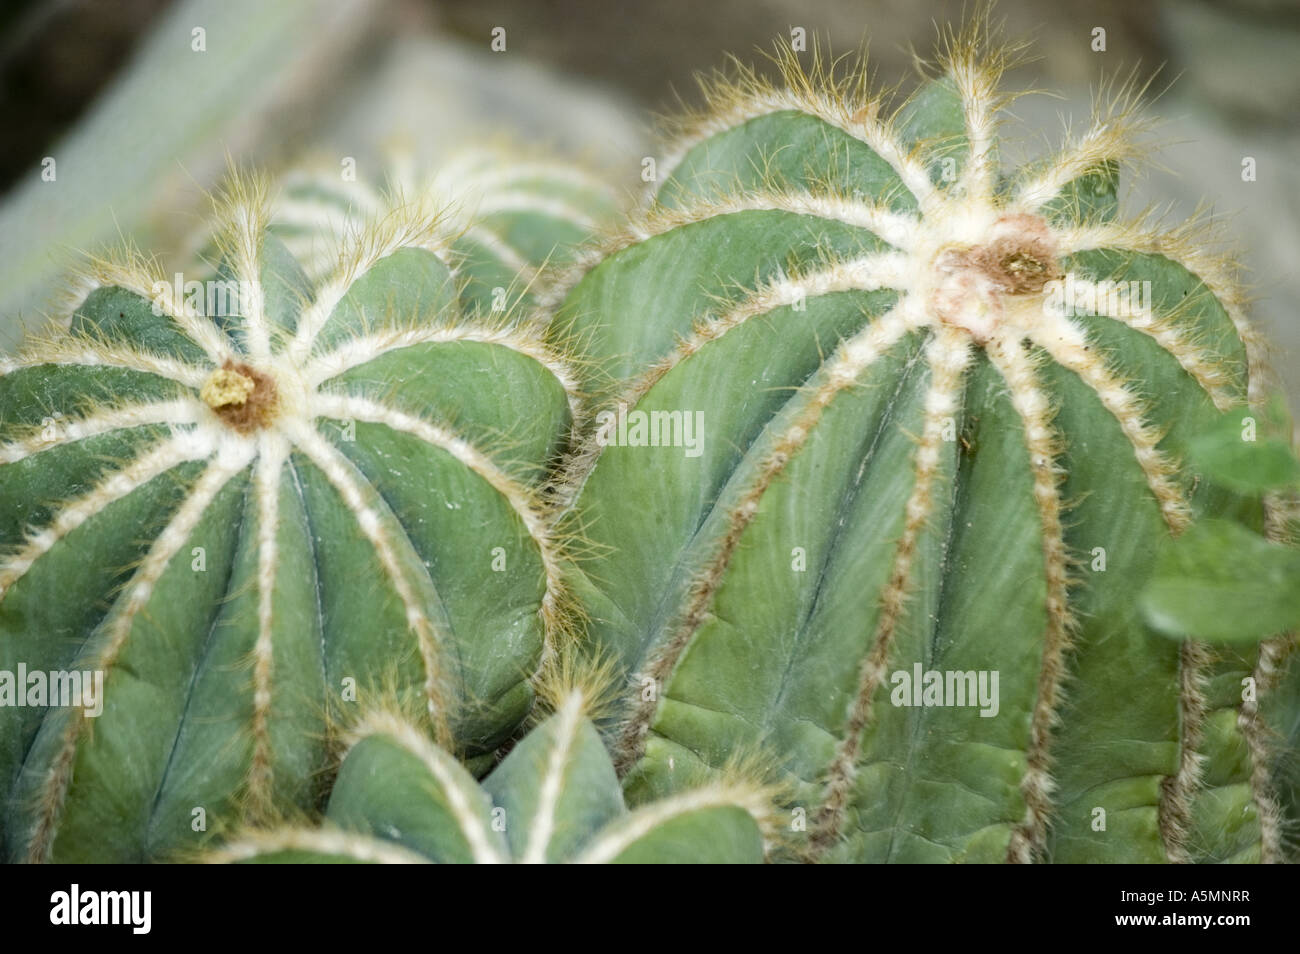 Cactus close up detail of Eriocactus Magnificus, cacctaceae, Brazil Stock Photo